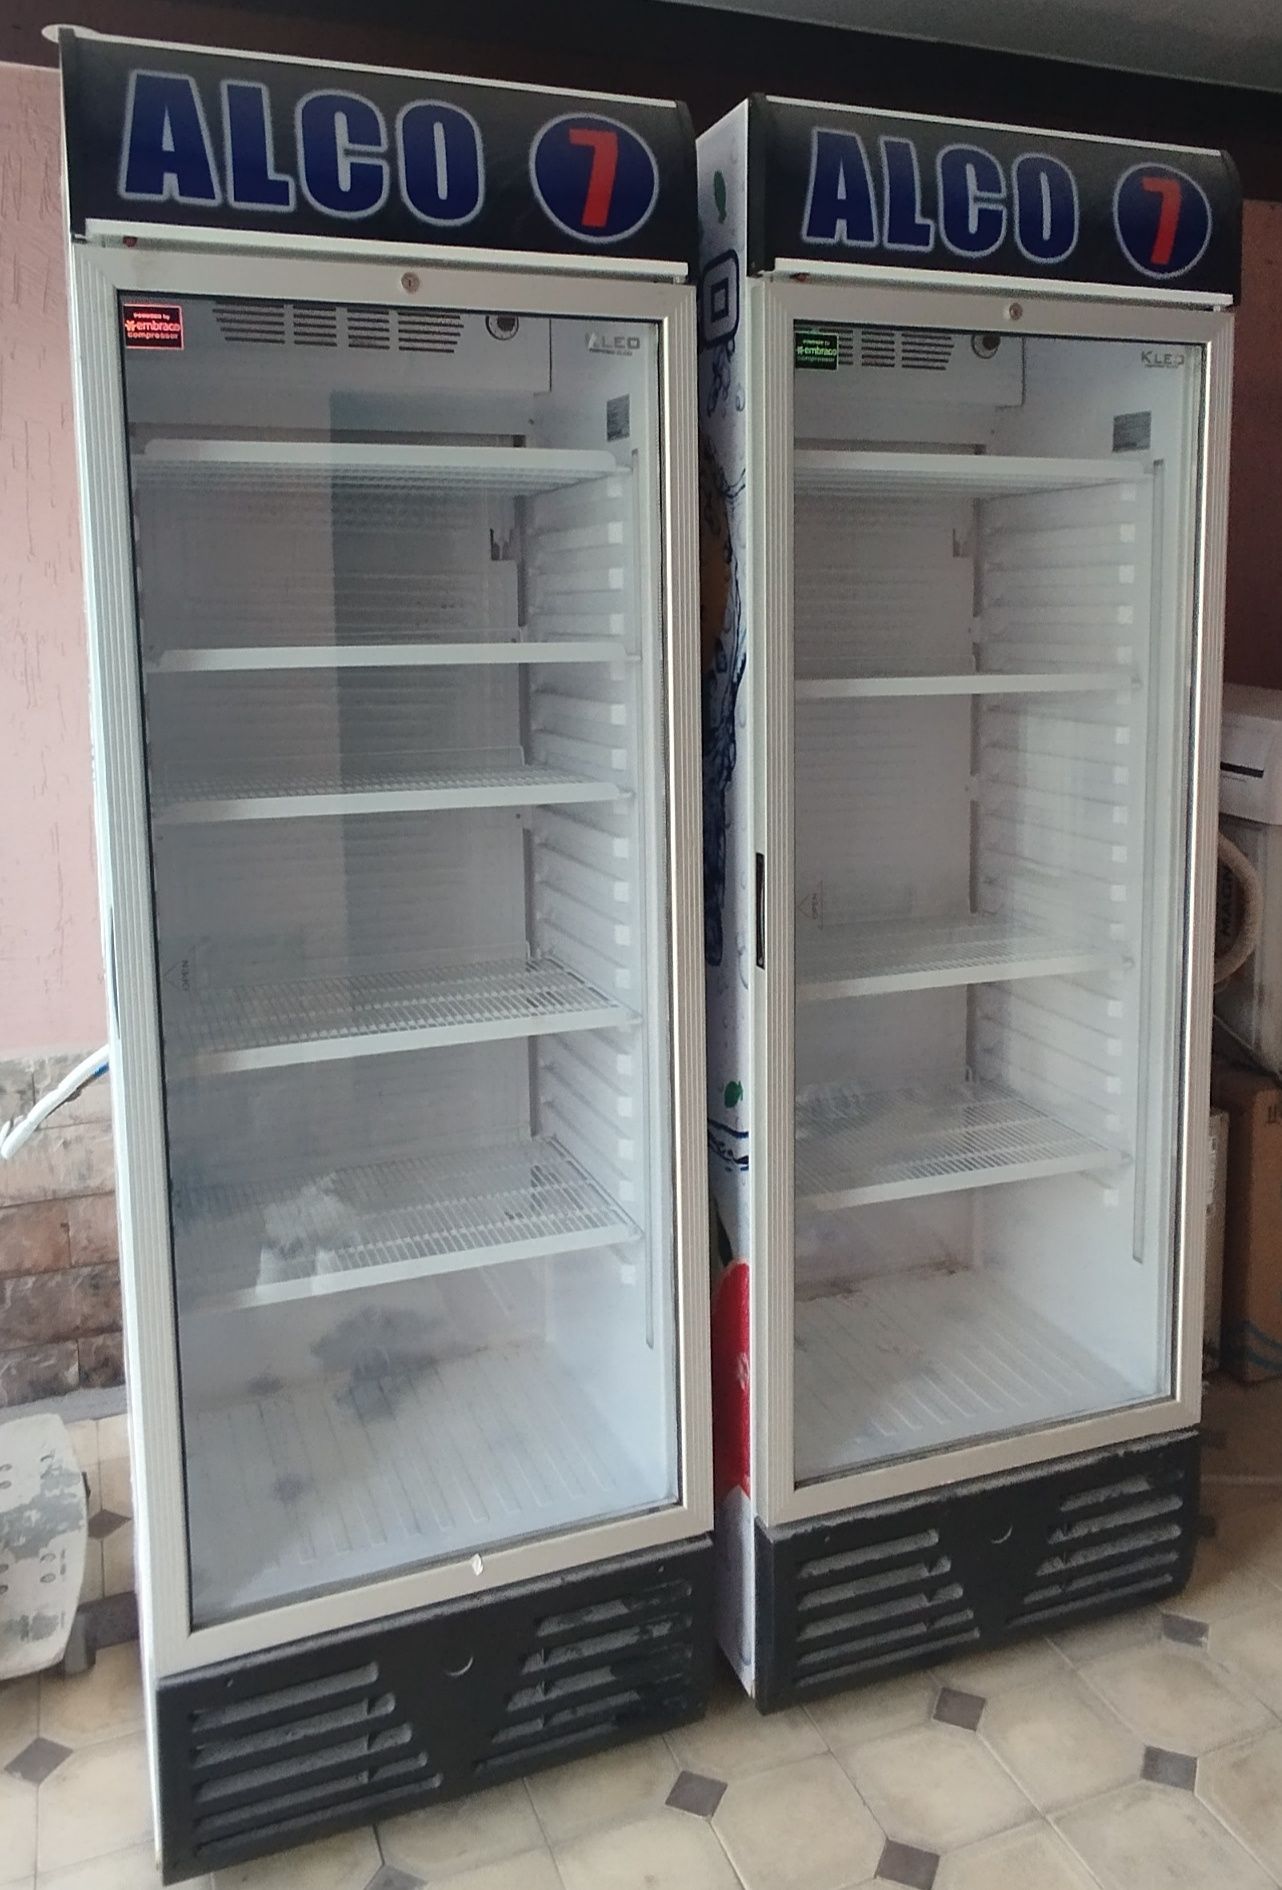 Kleo витрина холодильник